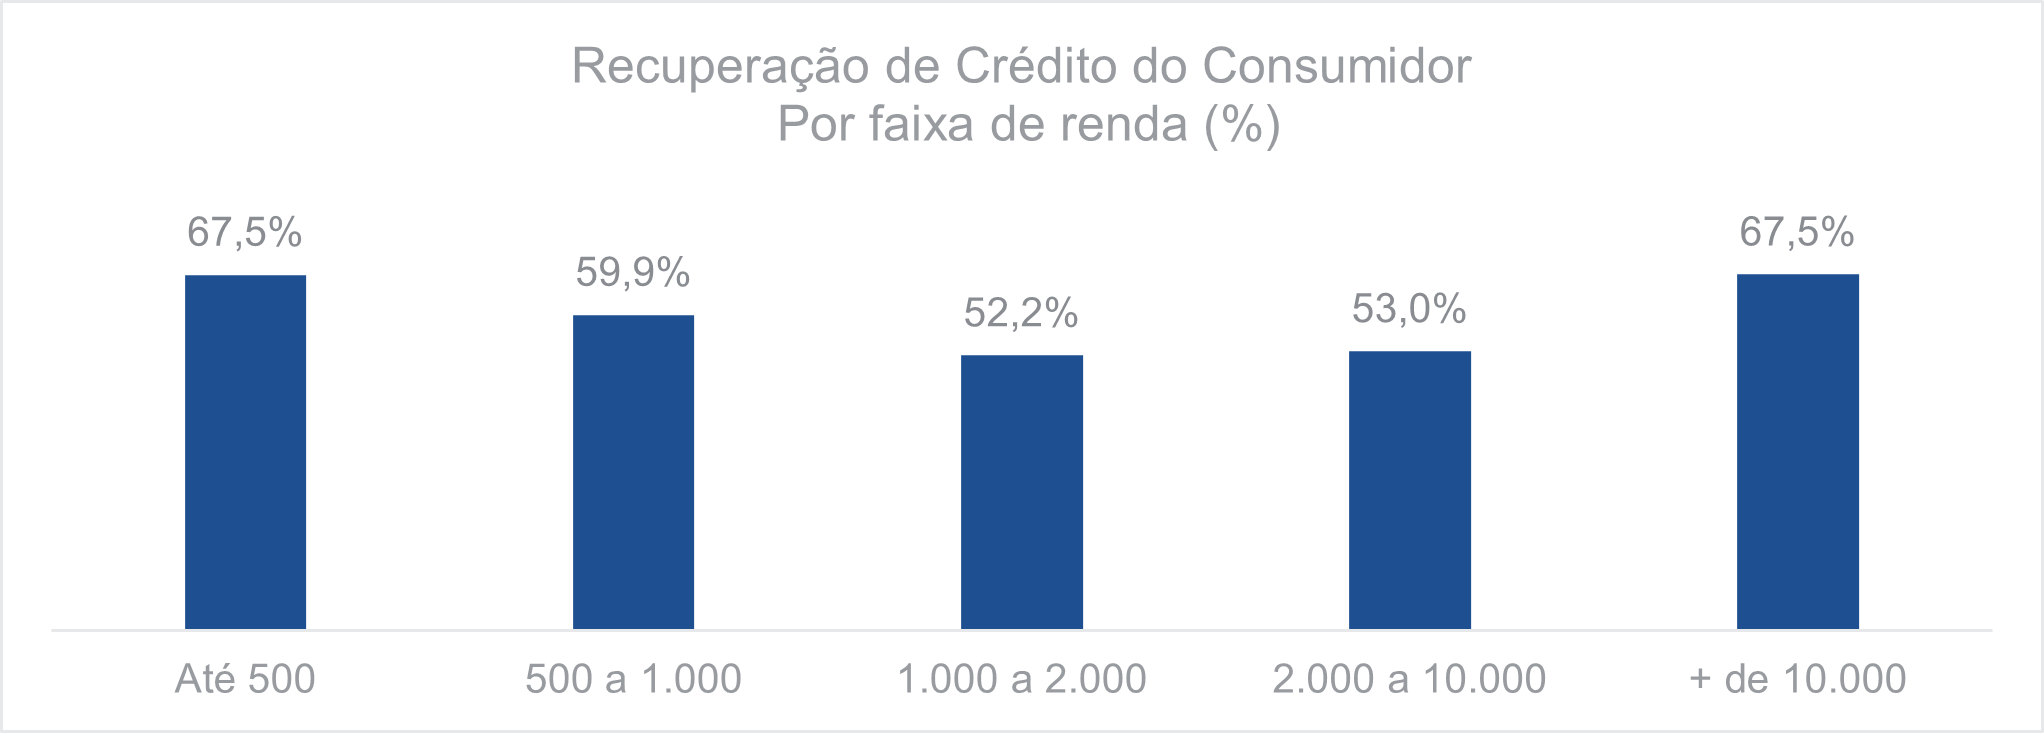 Recuperação de crédito do consumidor Por faixa de renda